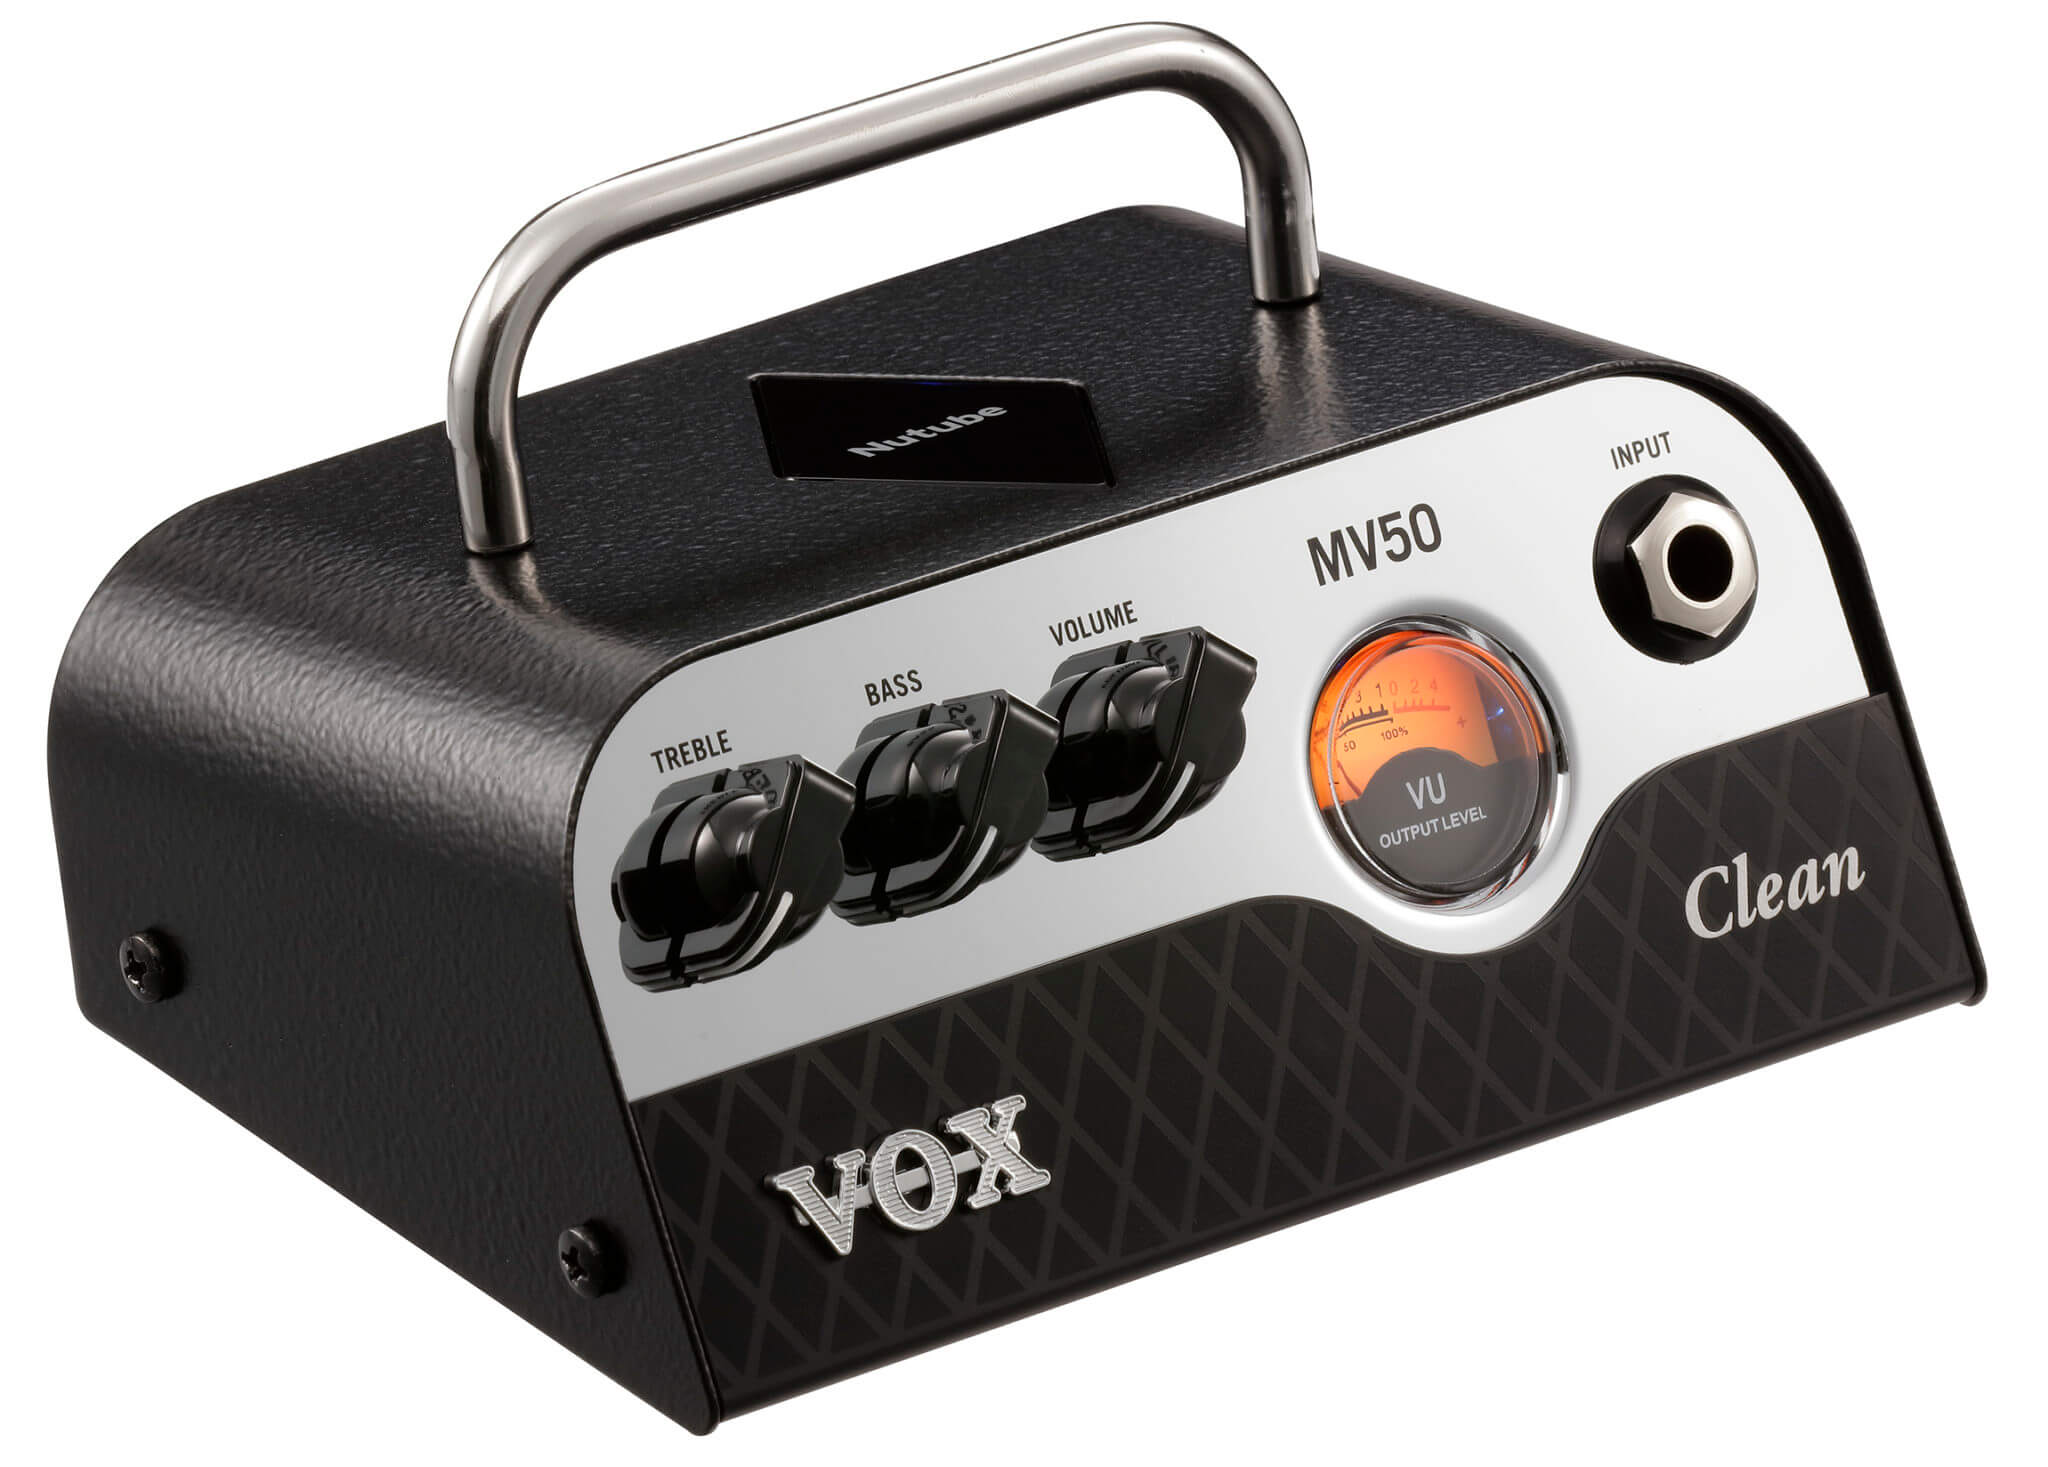 MV50 Clean - Vox Amps